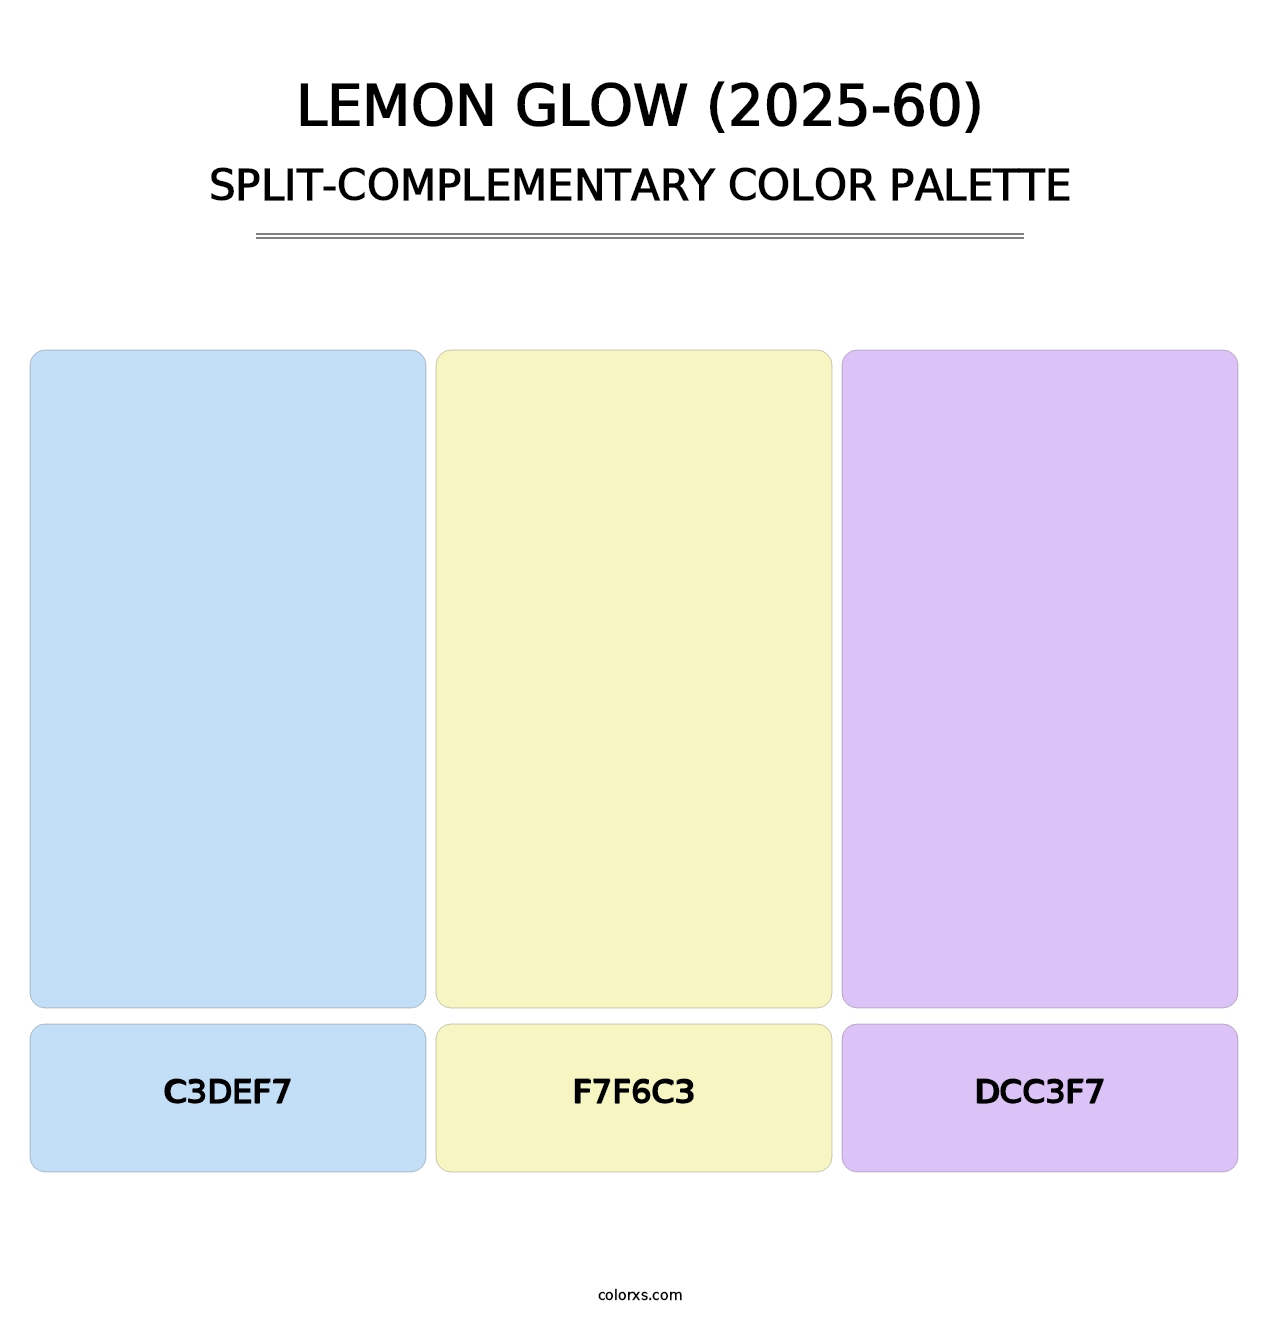 Lemon Glow (2025-60) - Split-Complementary Color Palette